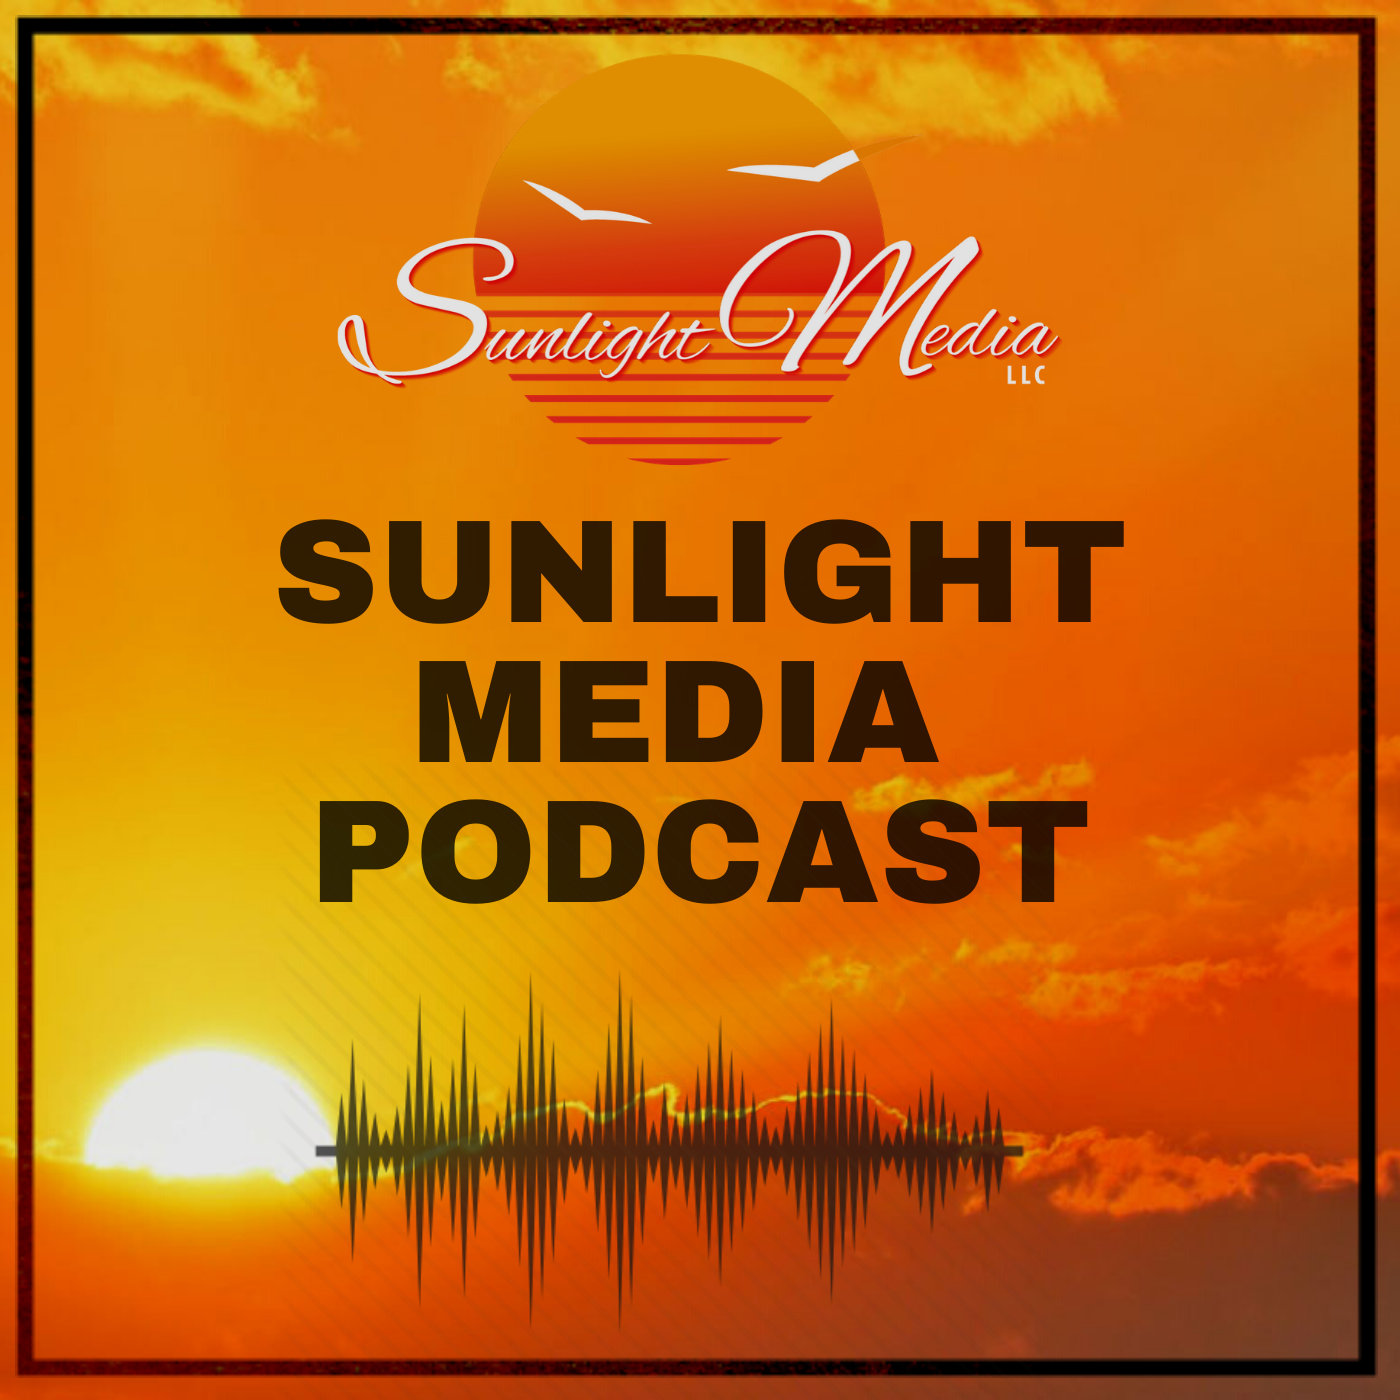 Sunlight Media Podcast